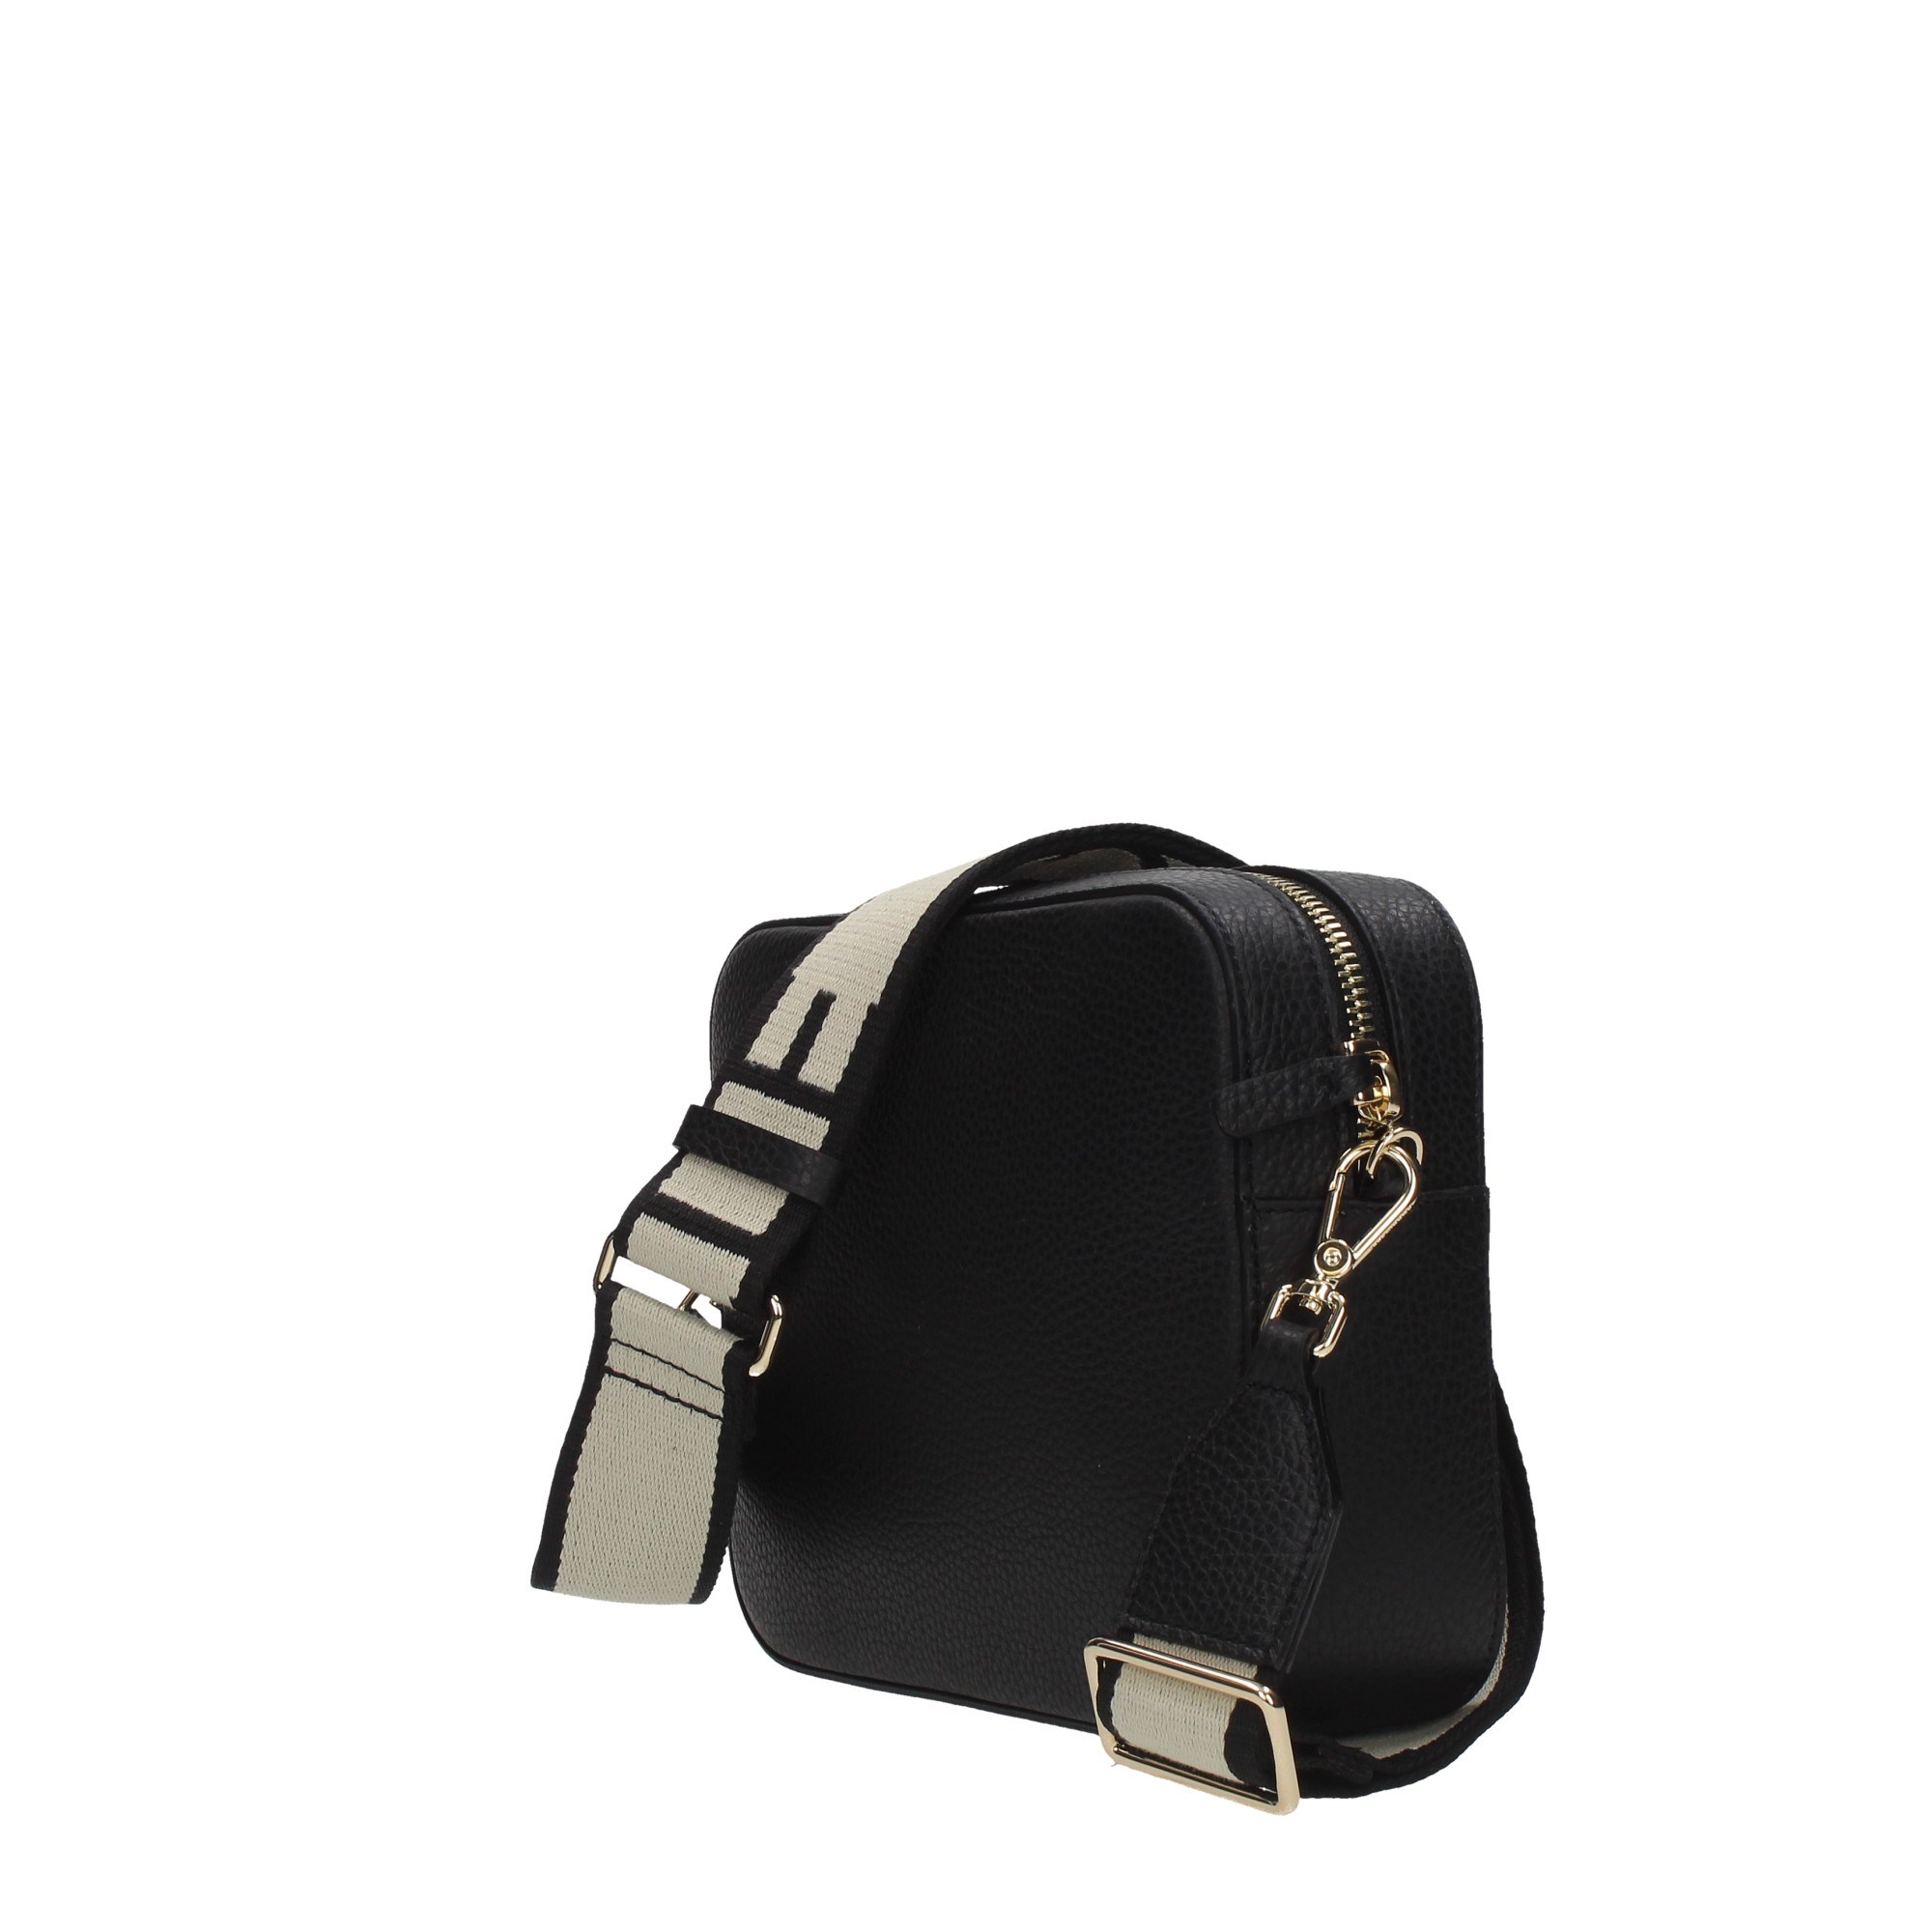 Coccinelle Accessories Women Shoulder Bags MN5 55M301